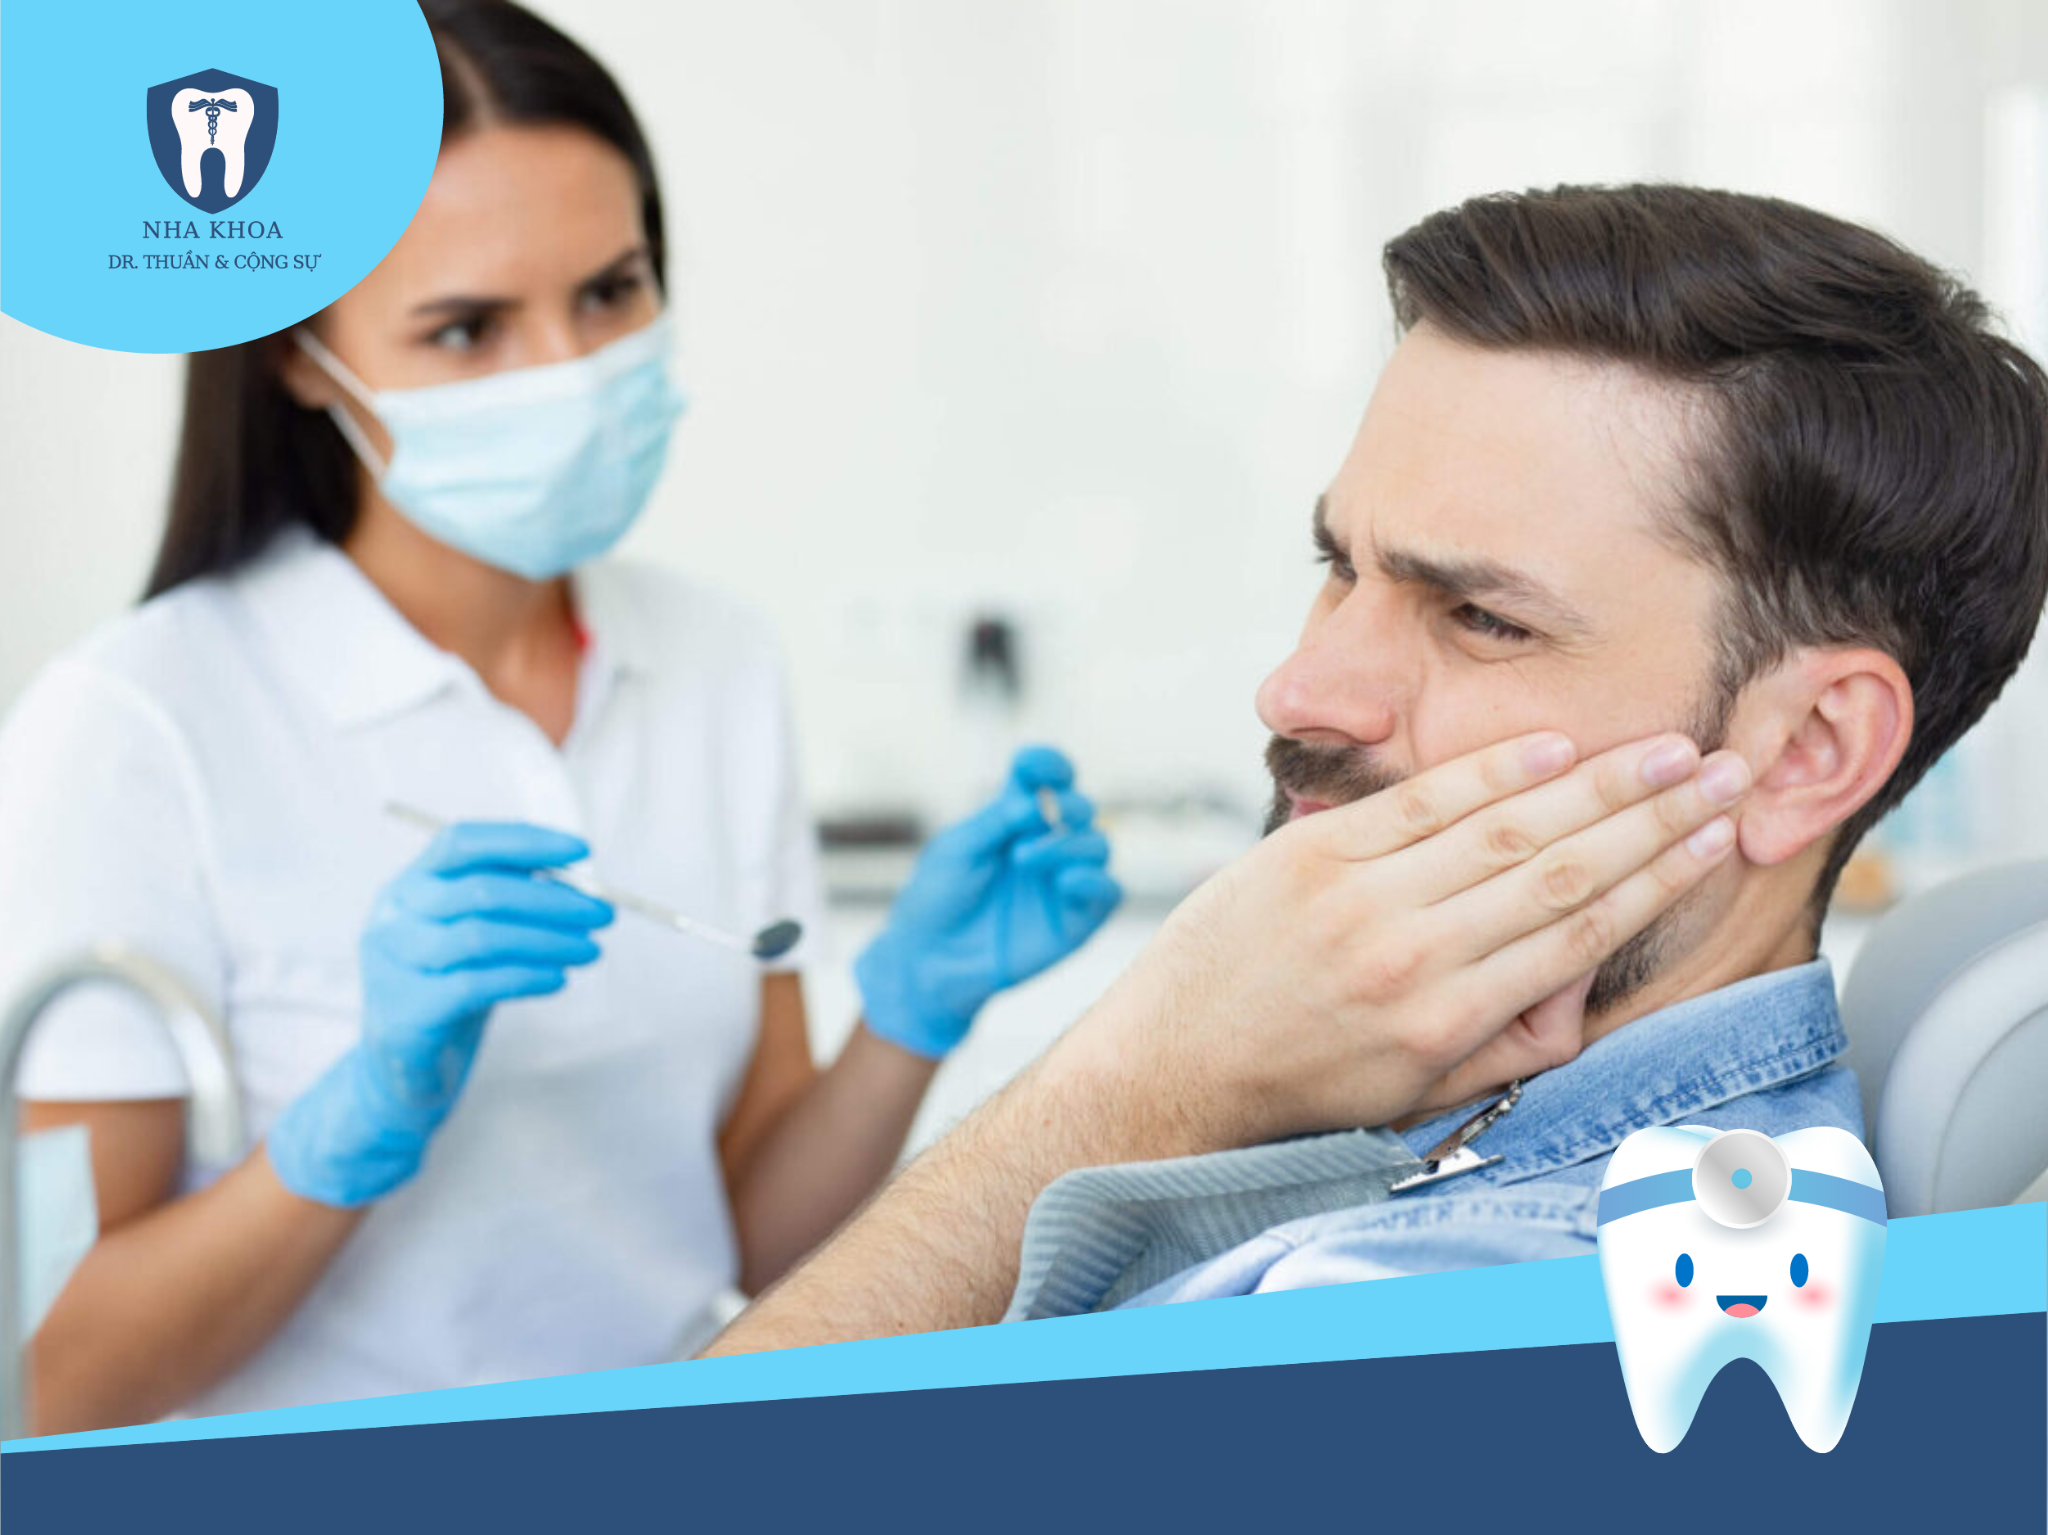 nhổ răng số 8 thường được khuyến nghị là biện pháp cuối cùng sau khi các phương pháp khác không hiệu quả.